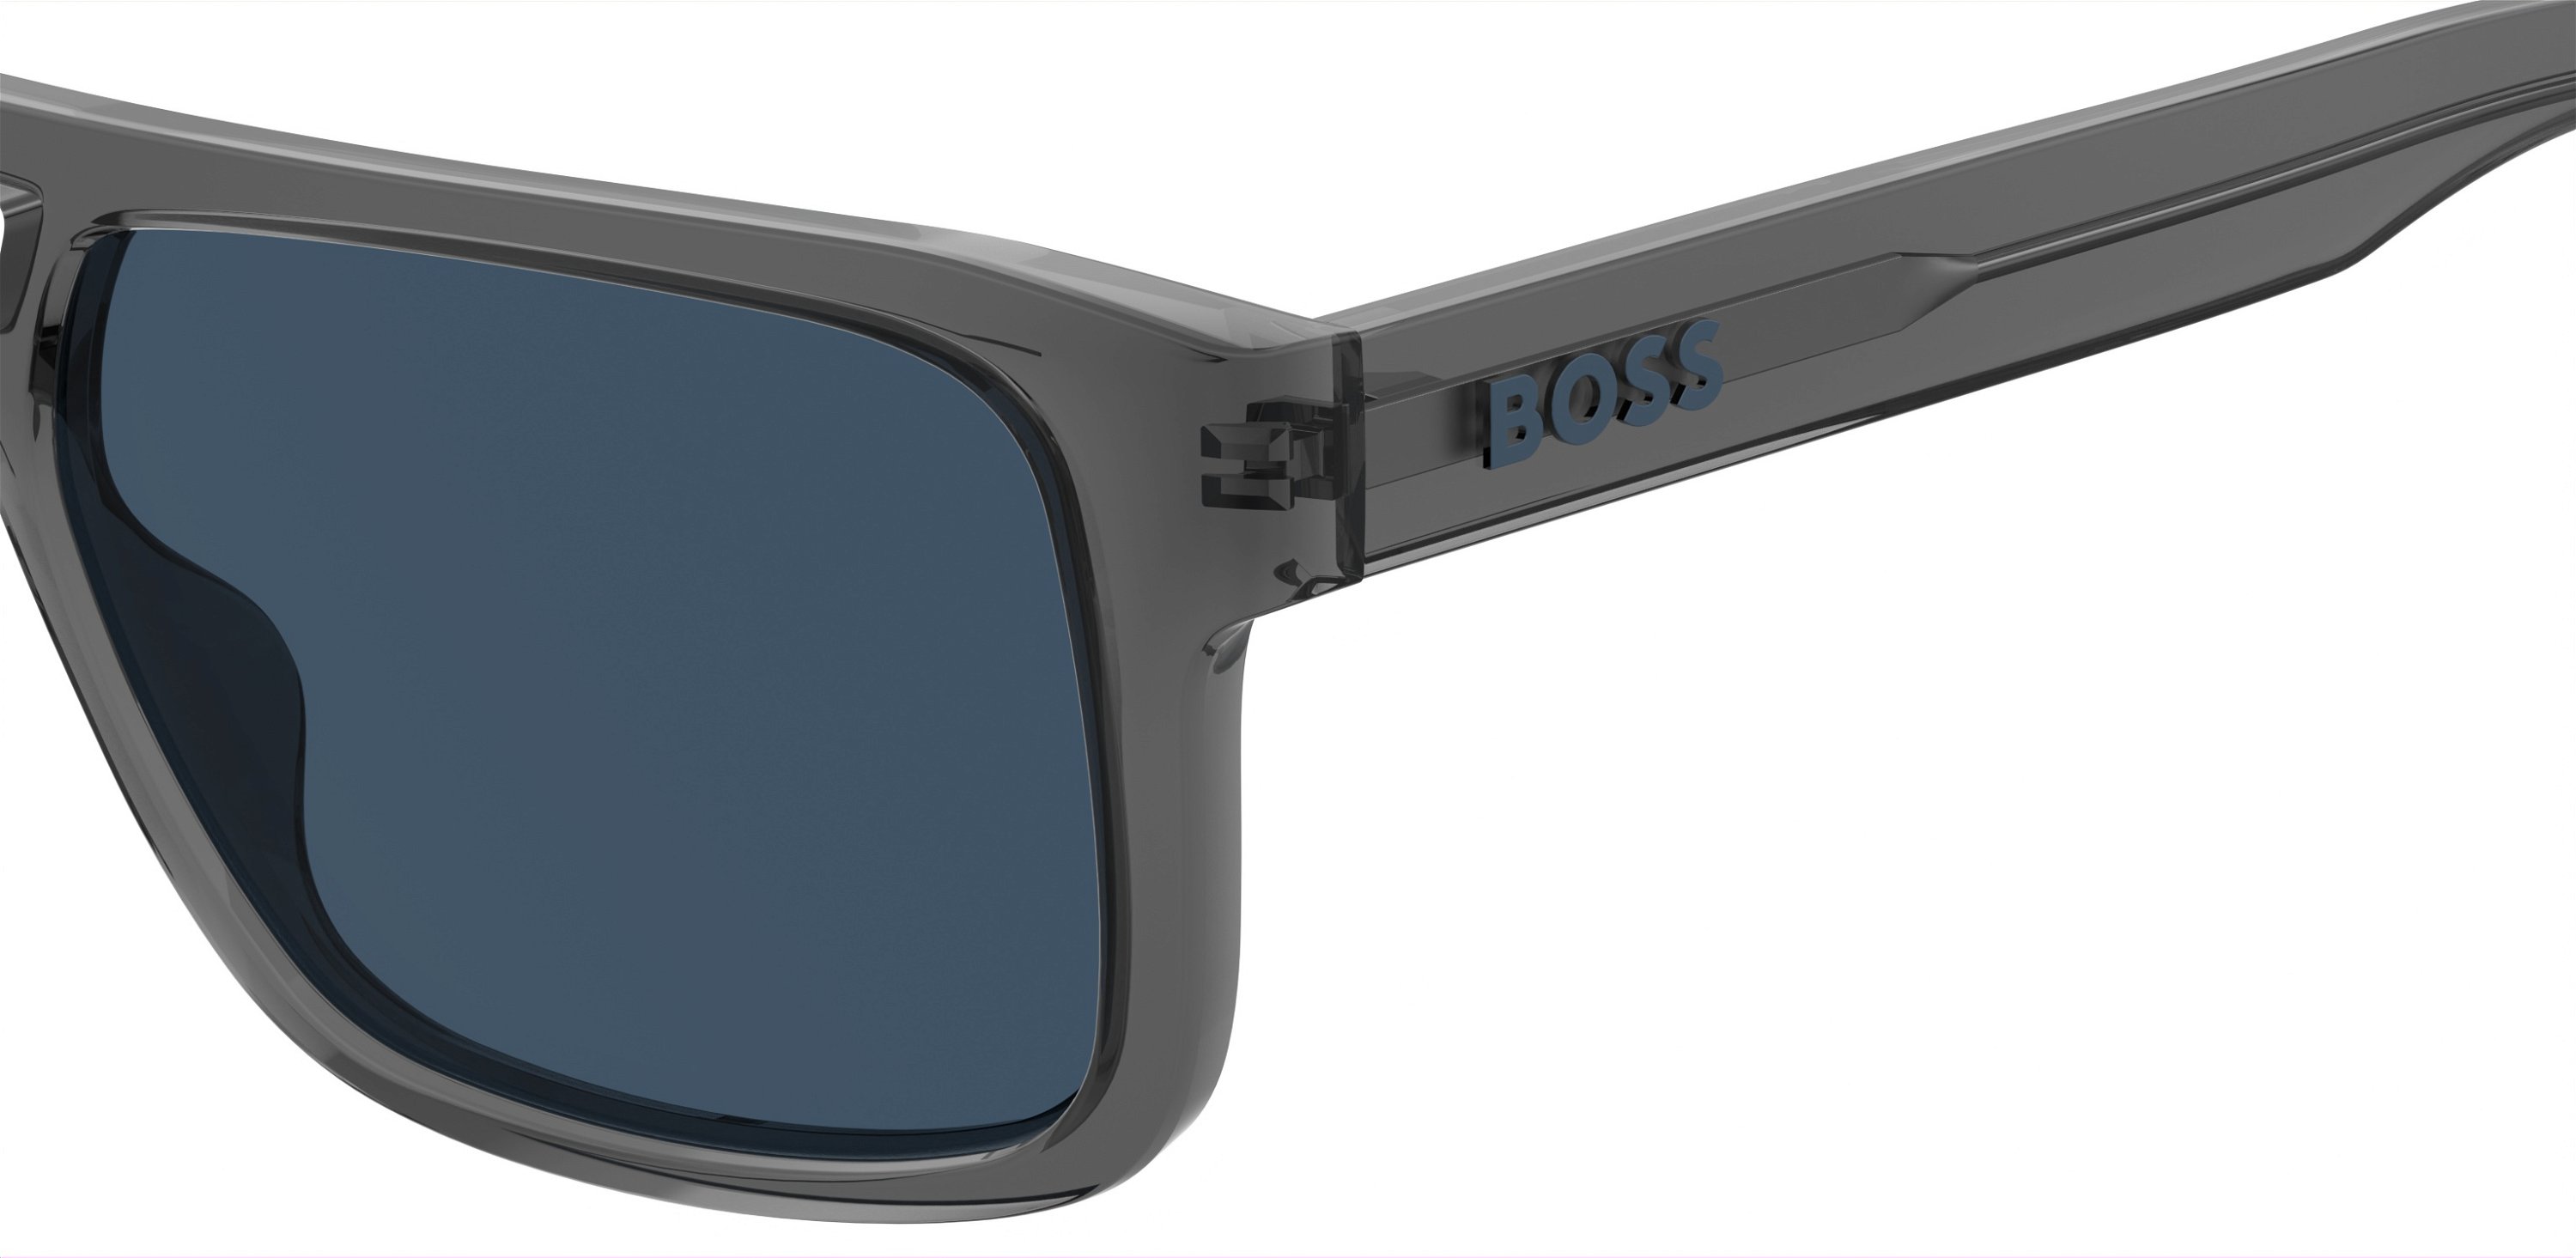 Das Bild zeigt die Sonnenbrille BOSS1648S KB7 von der Marke BOSS in Grau.